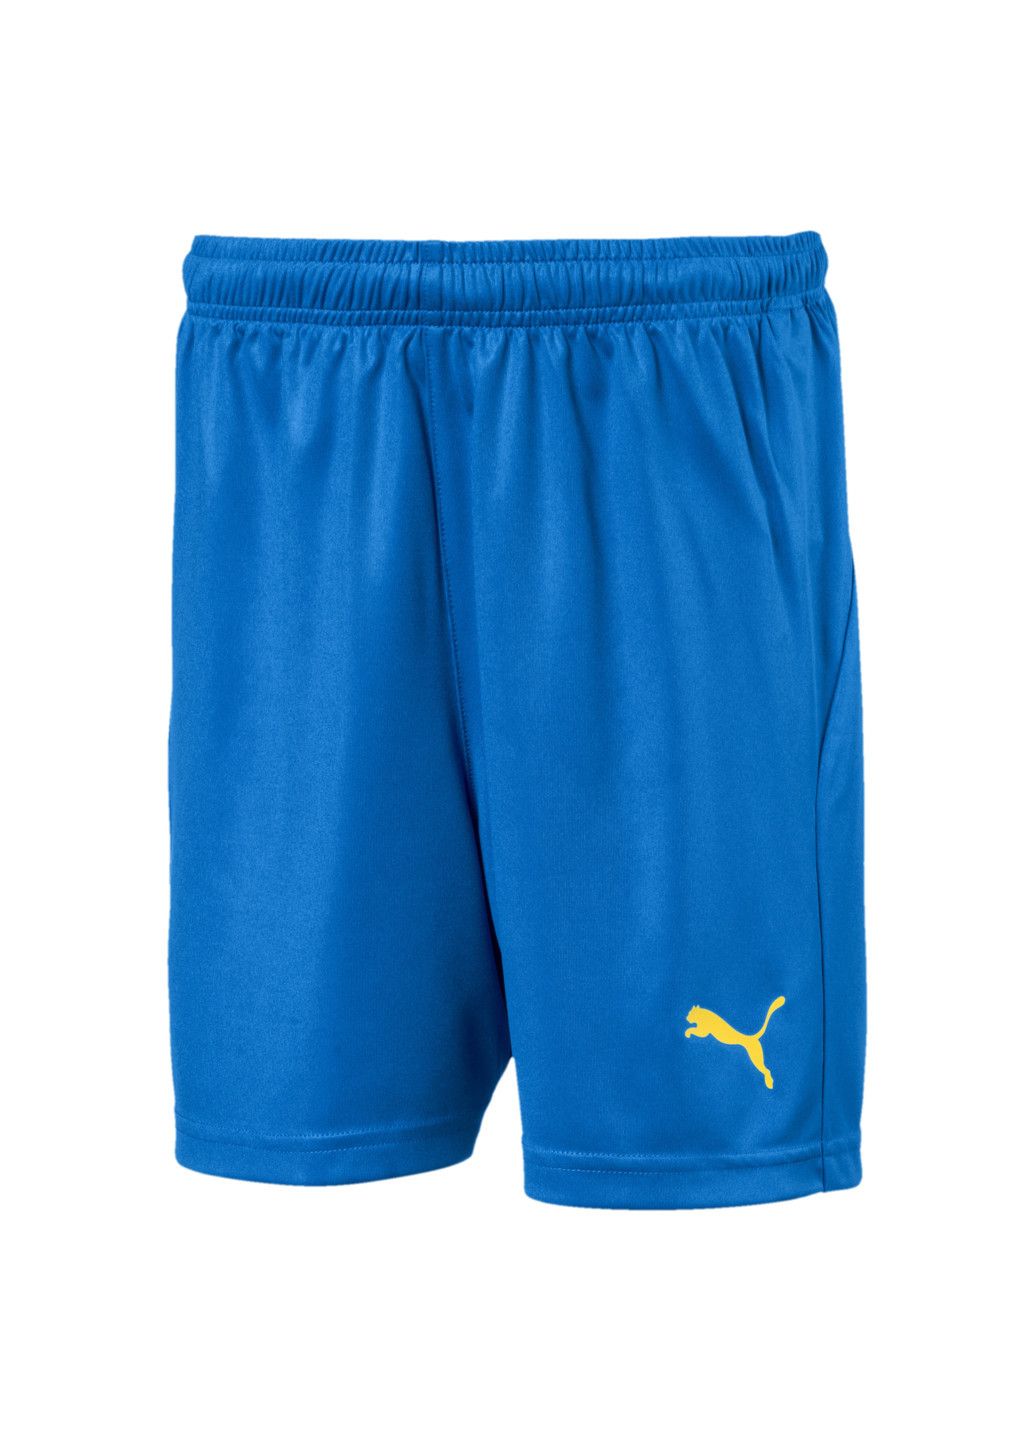 Шорти LIGA Kids’ Football Shorts Puma однотонні сині спортивні поліестер